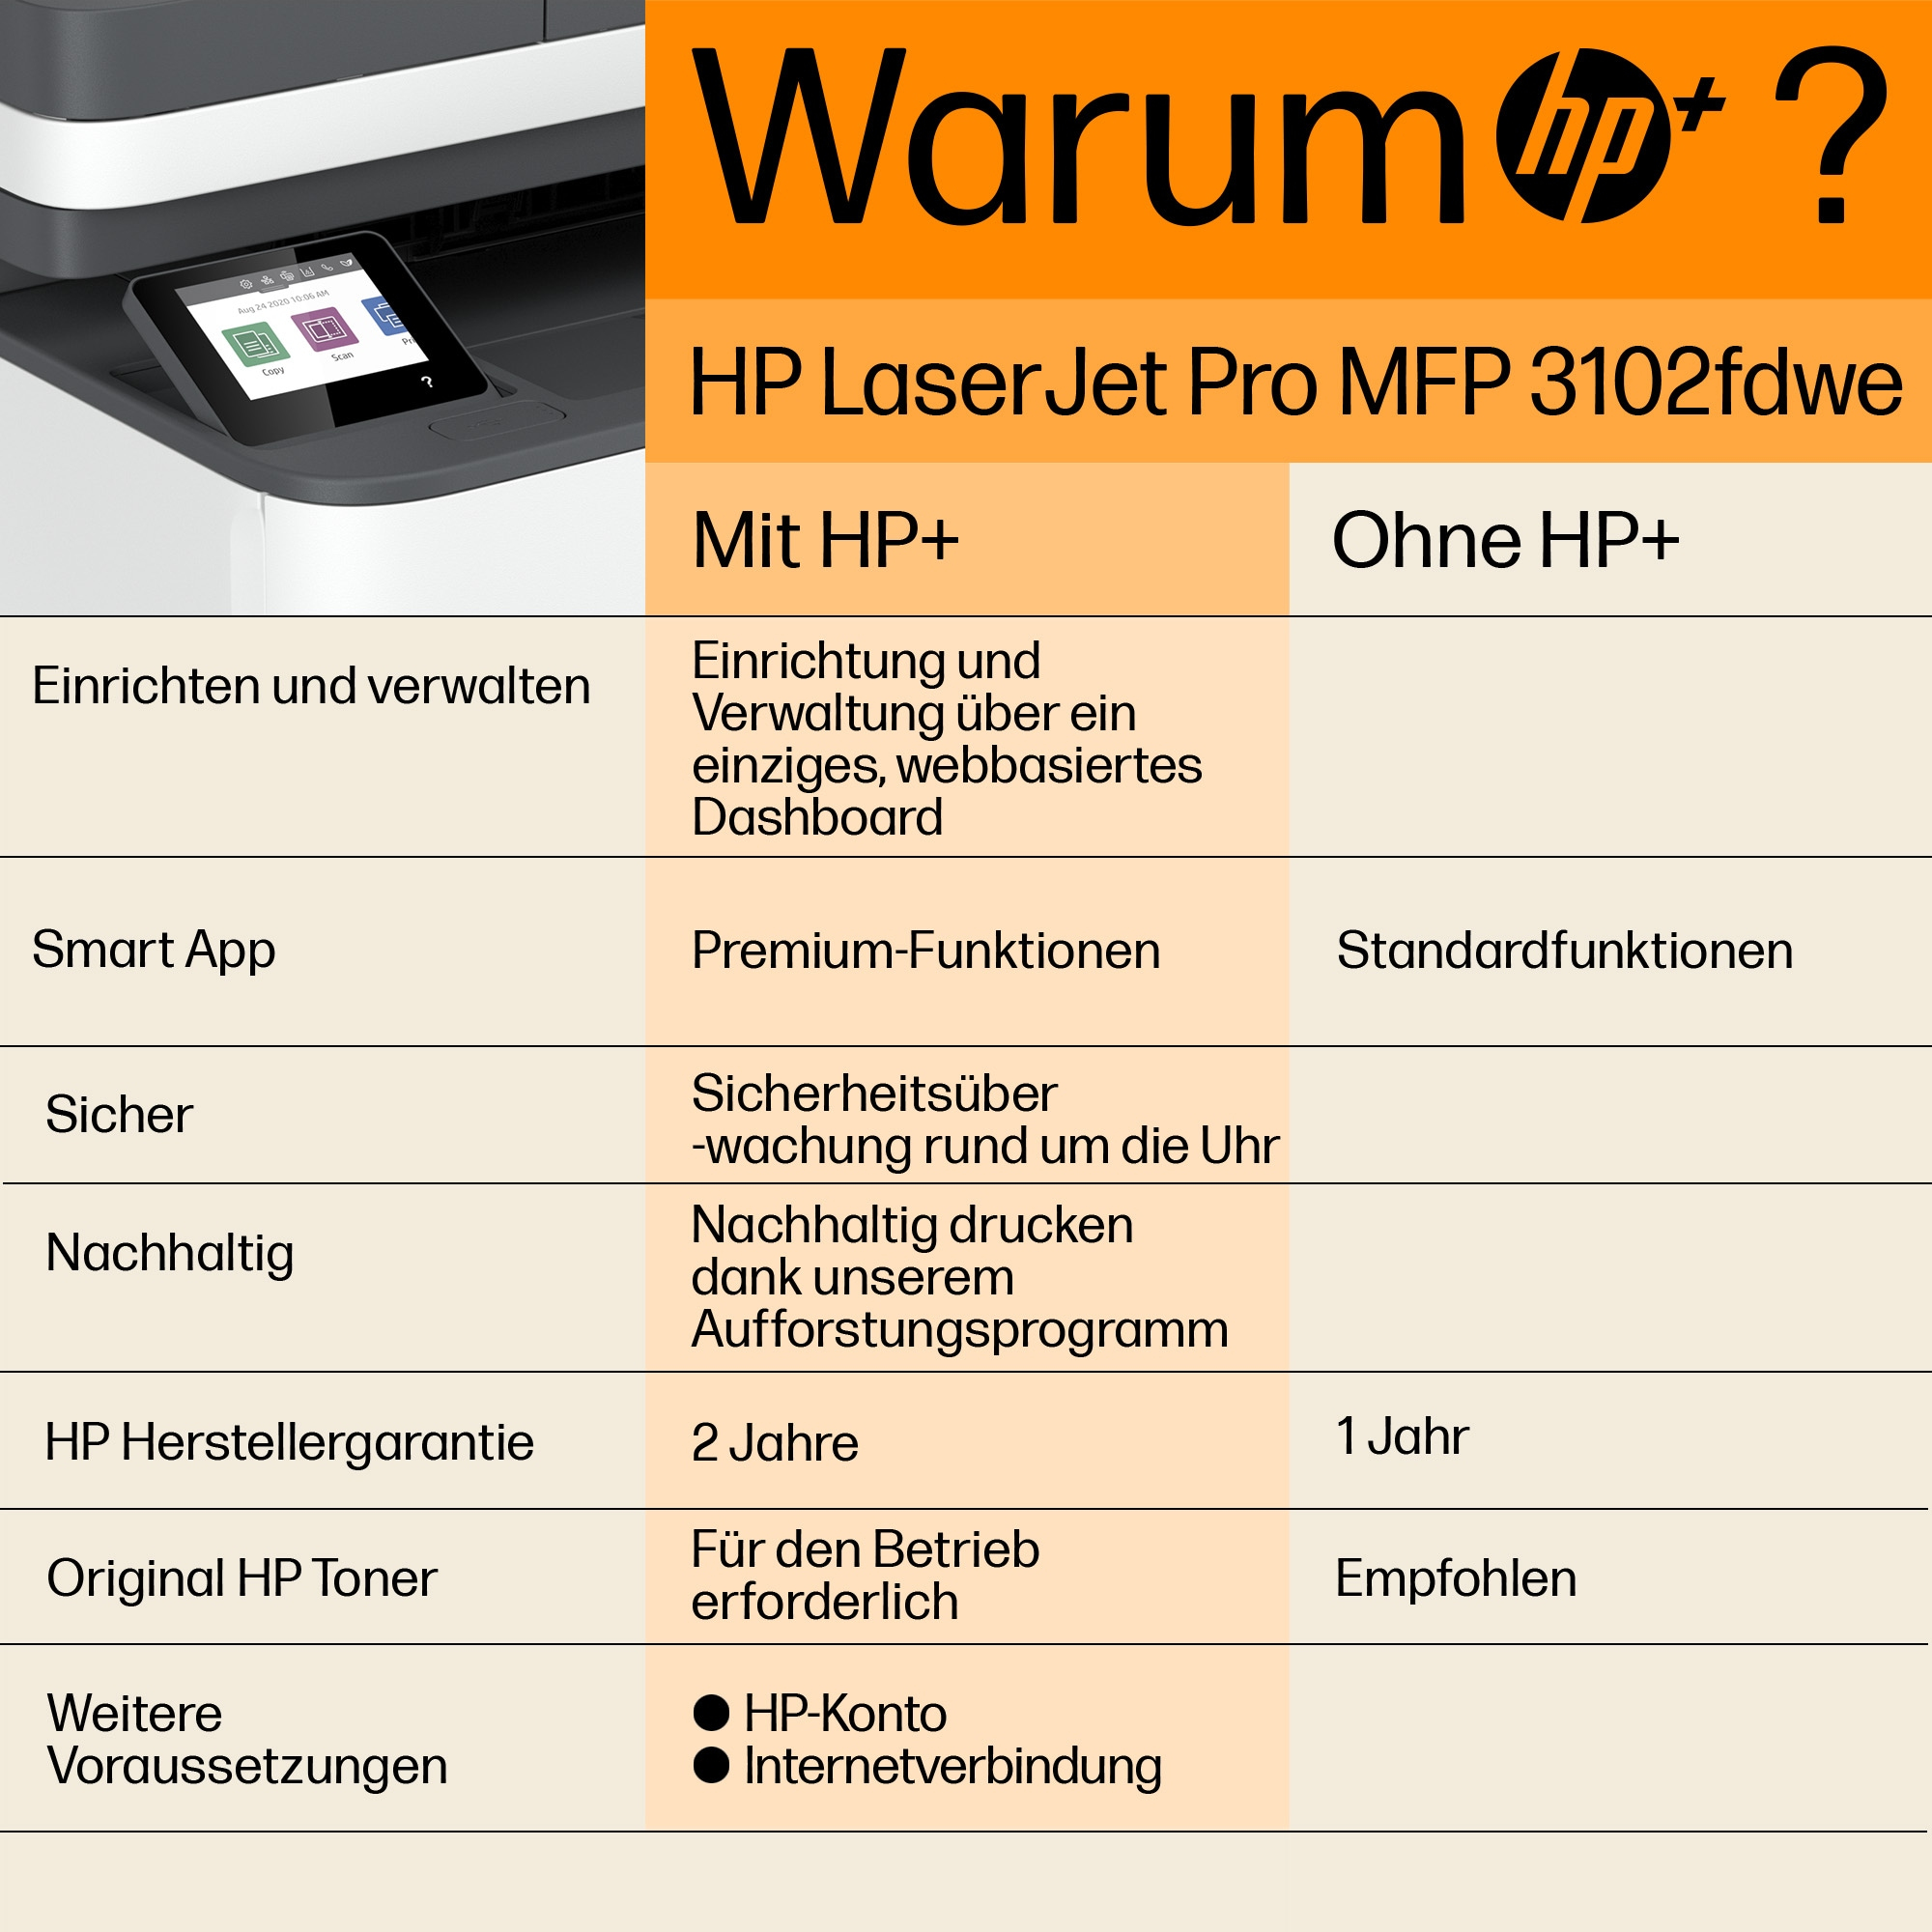 HP 3G630E  HP LaserJet Pro Imprimante multifonction 3102fdwe, Noir et  blanc, Imprimante pour Petites/moyennes entreprises, Impression, copie,  scan, fax, Chargeur automatique de documents; impression recto-verso; port  avant lecteur flash USB; écran